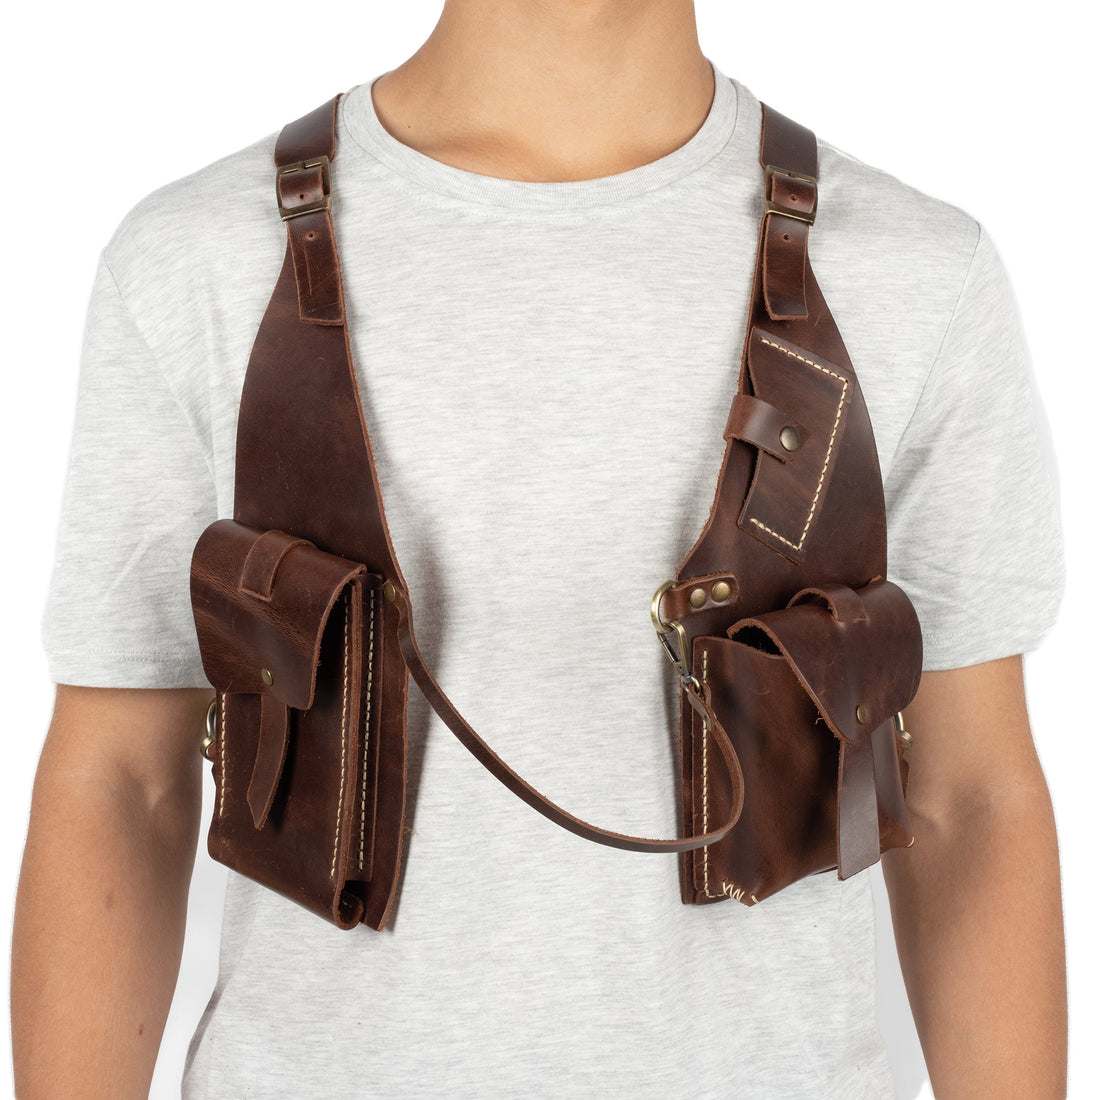 Brown Regulus Shoulder Leather Holster With Pocket - Zengoda Shop online from Artisan Brands